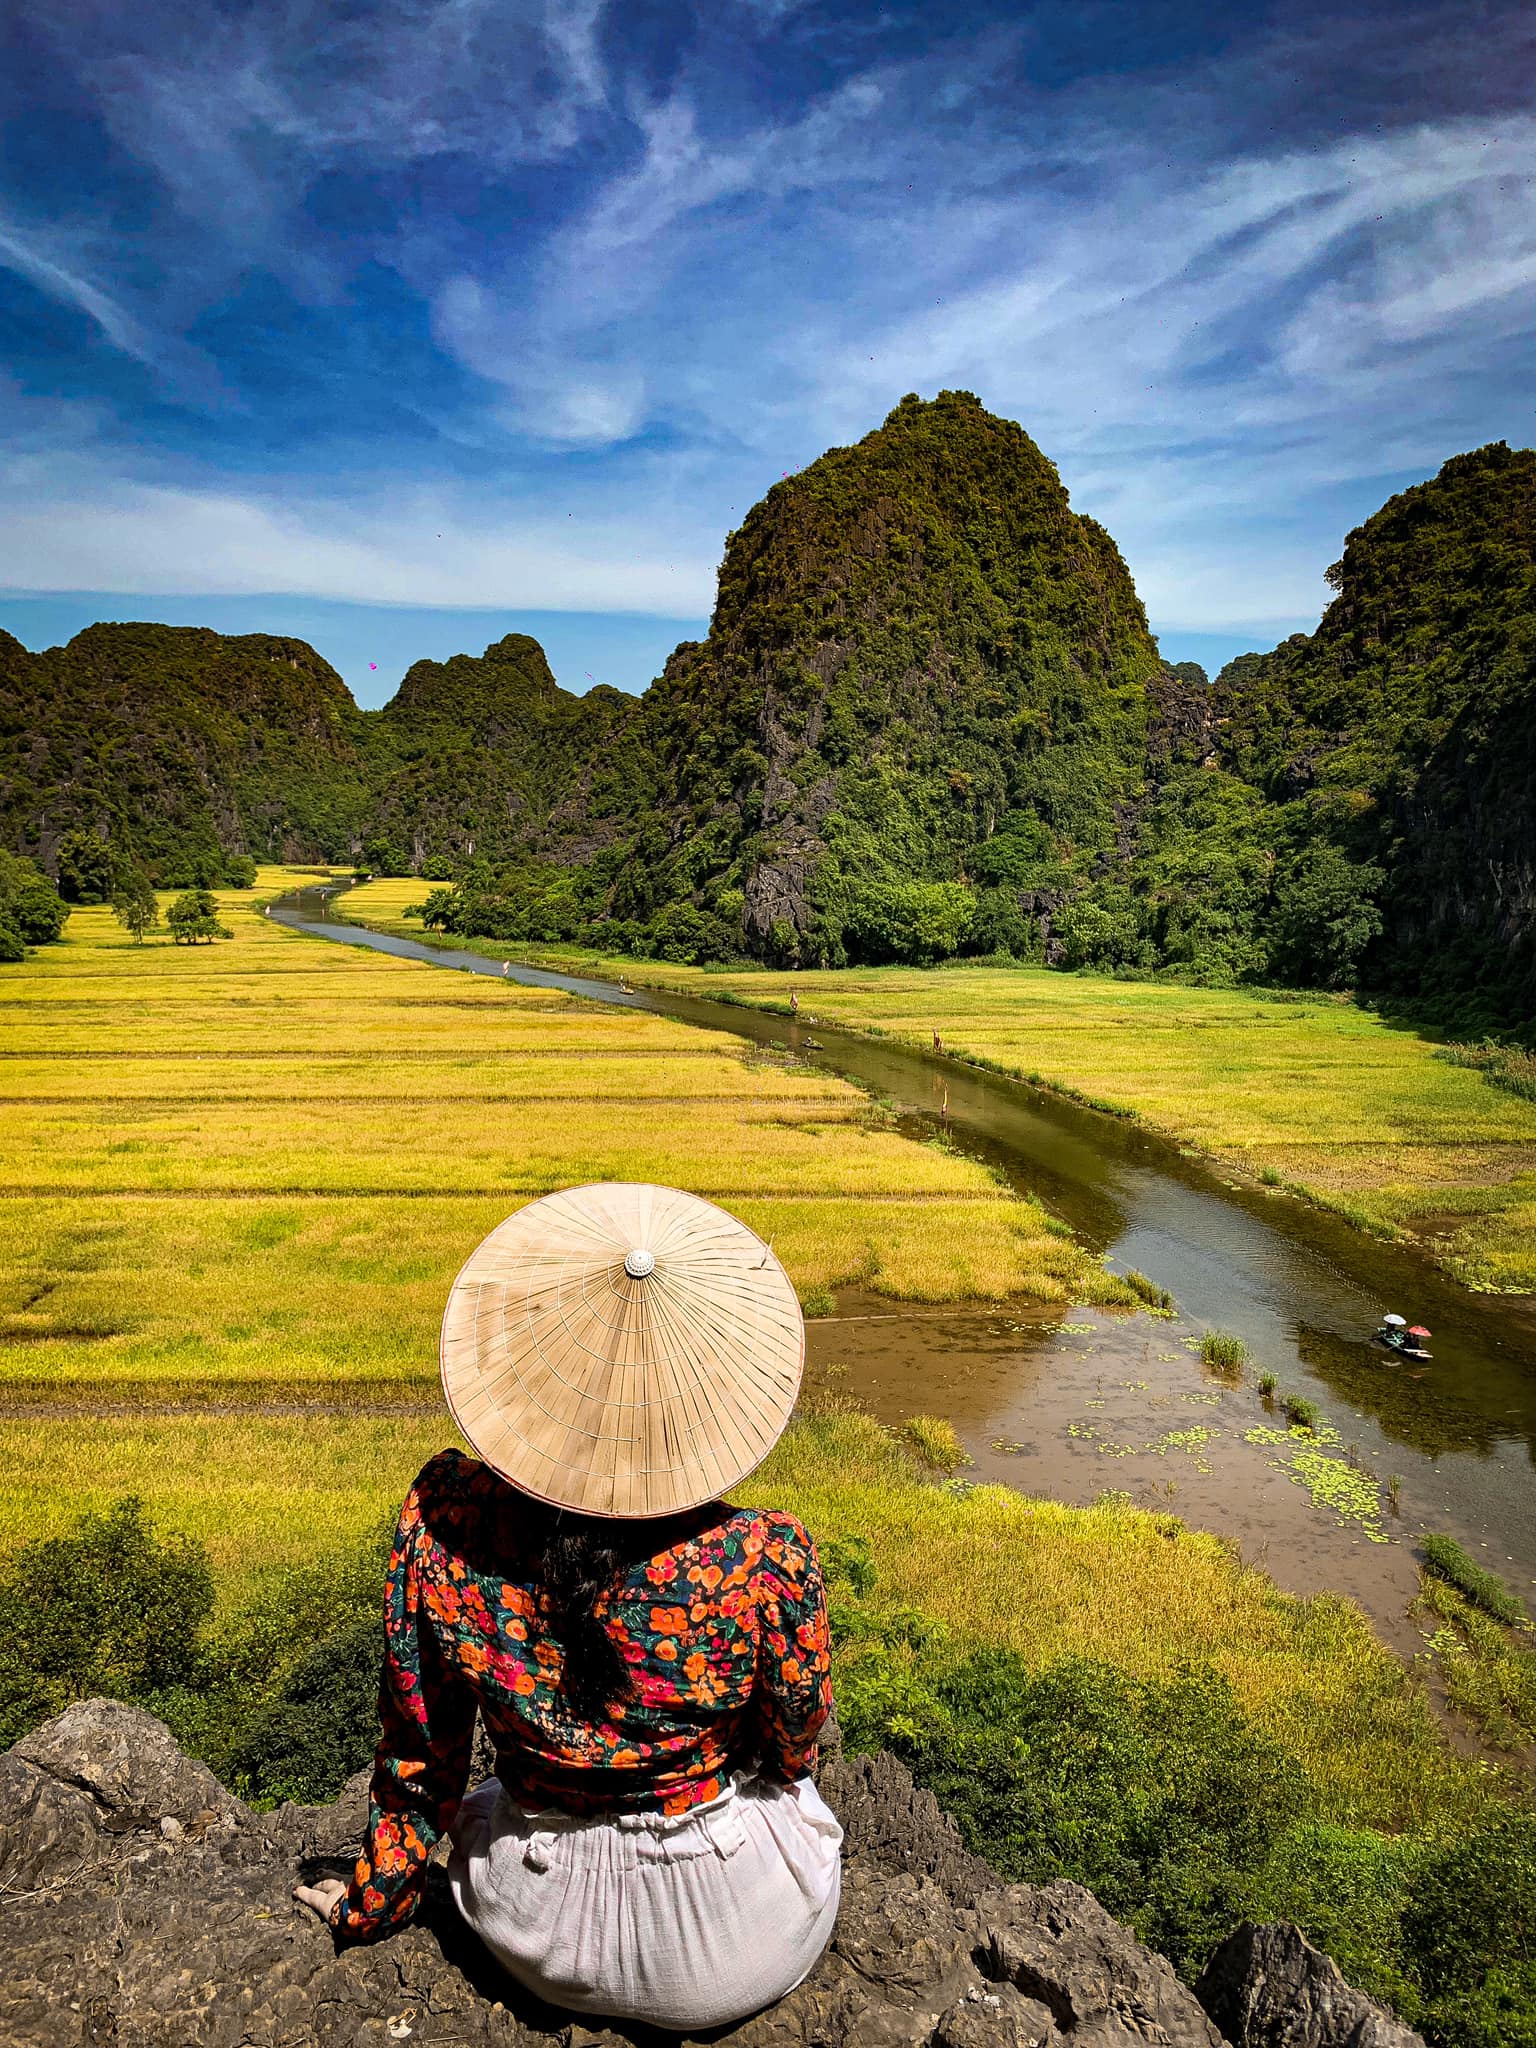 Mùa lúa vàng ươm ở Ninh Bình. Hình: Đặng Trang Linh